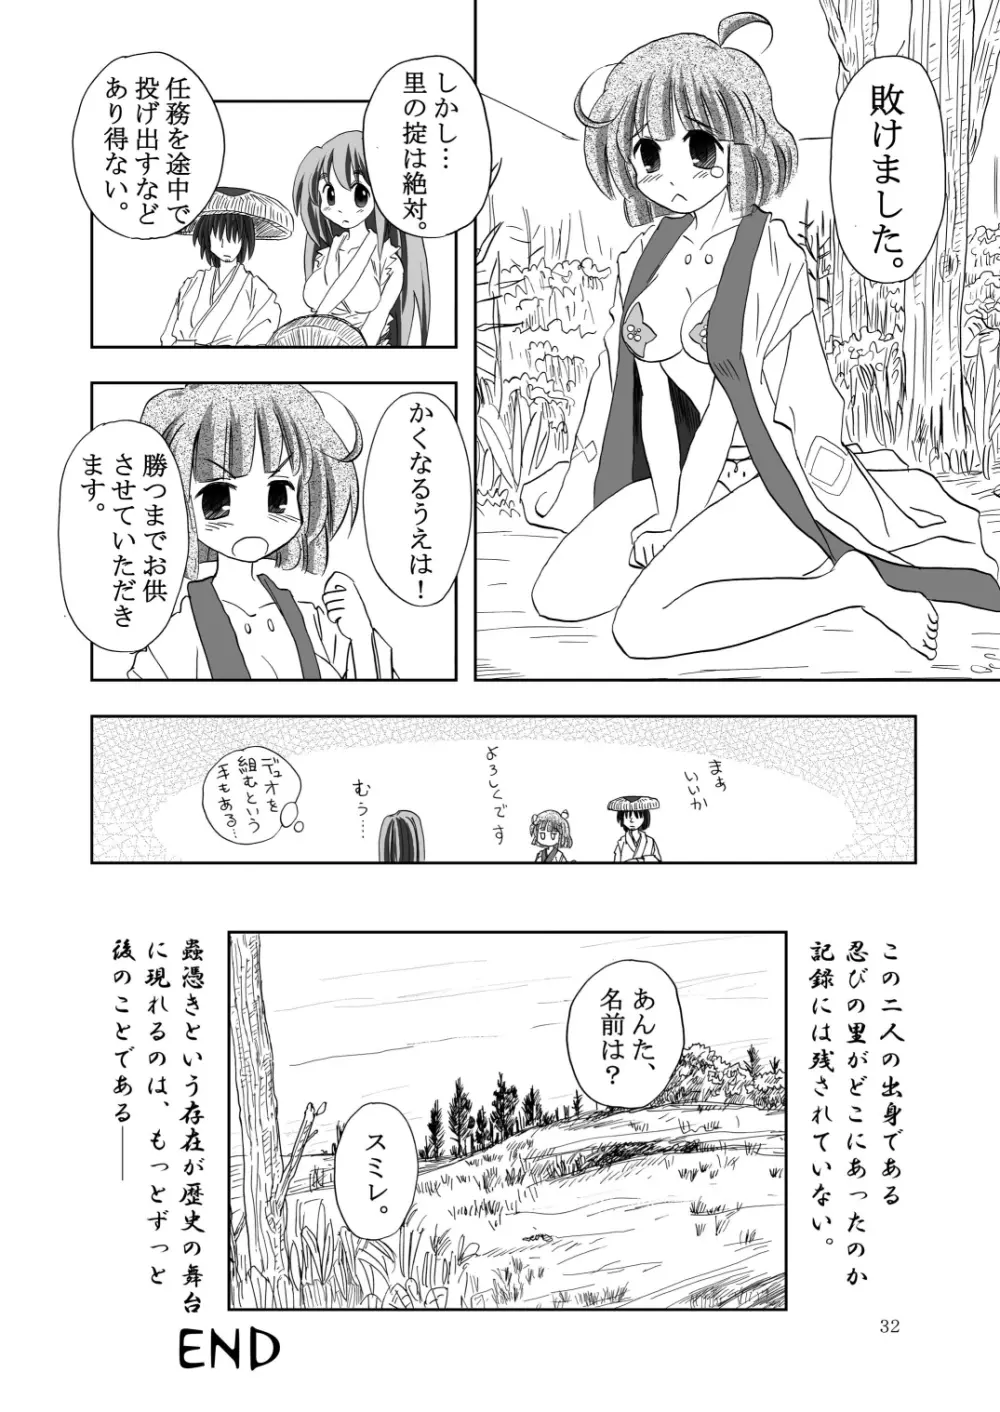 合触 GaSSyoku 2 32ページ